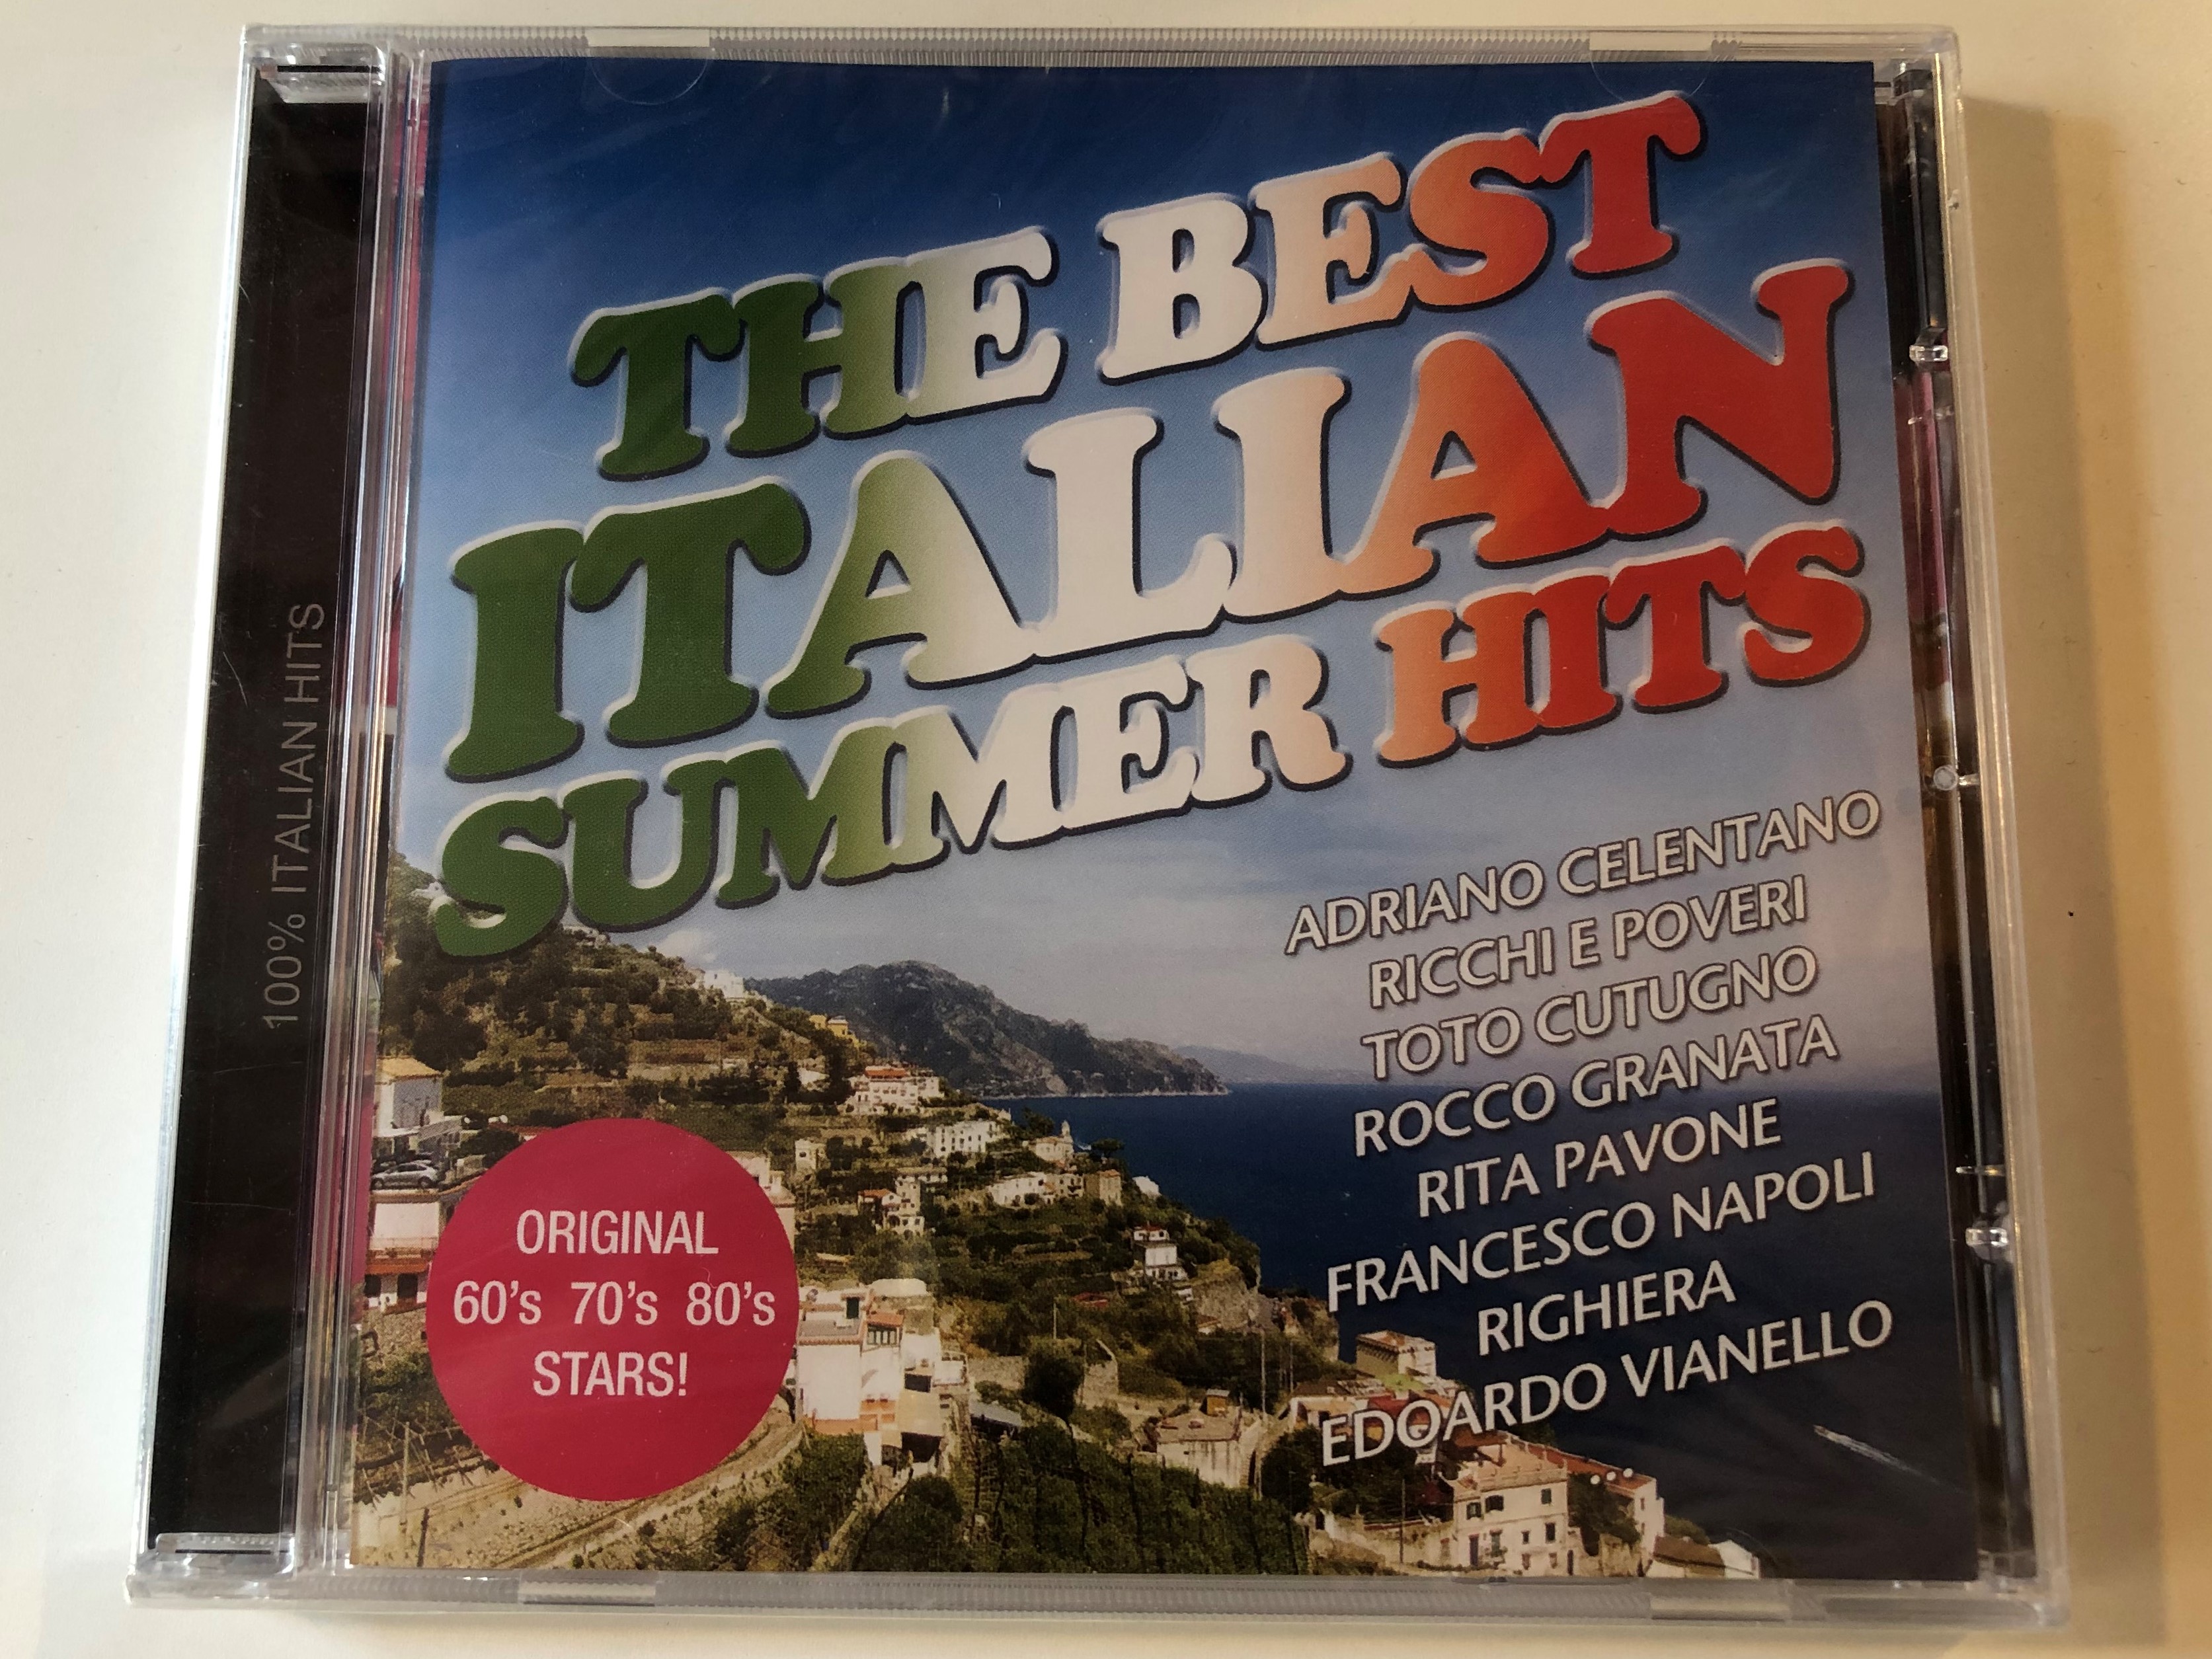 the-best-italian-summer-hits-adriano-celentano-ricchi-e-poveri-toto-cutugno-rocco-granata-rita-pavone-francesco-napoli-righiera-edoardo-vianello-frontline-productions-records-audio-cd-1-.jpg